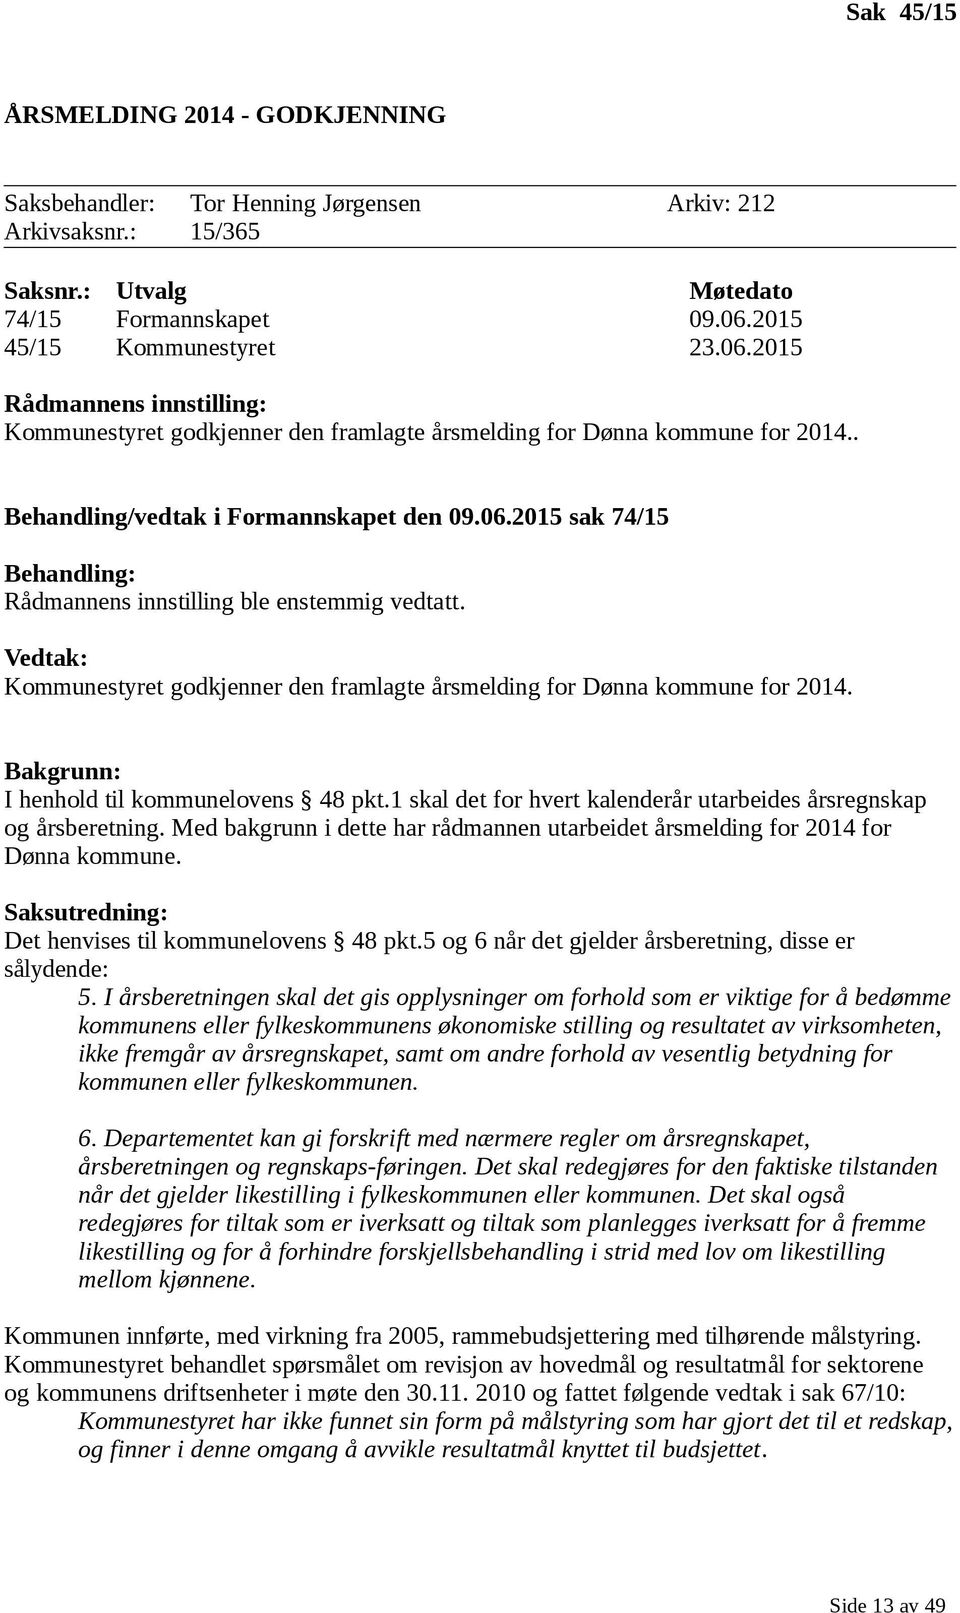 Vedtak: Kommunestyret godkjenner den framlagte årsmelding for Dønna kommune for 2014. Bakgrunn: I henhold til kommunelovens 48 pkt.